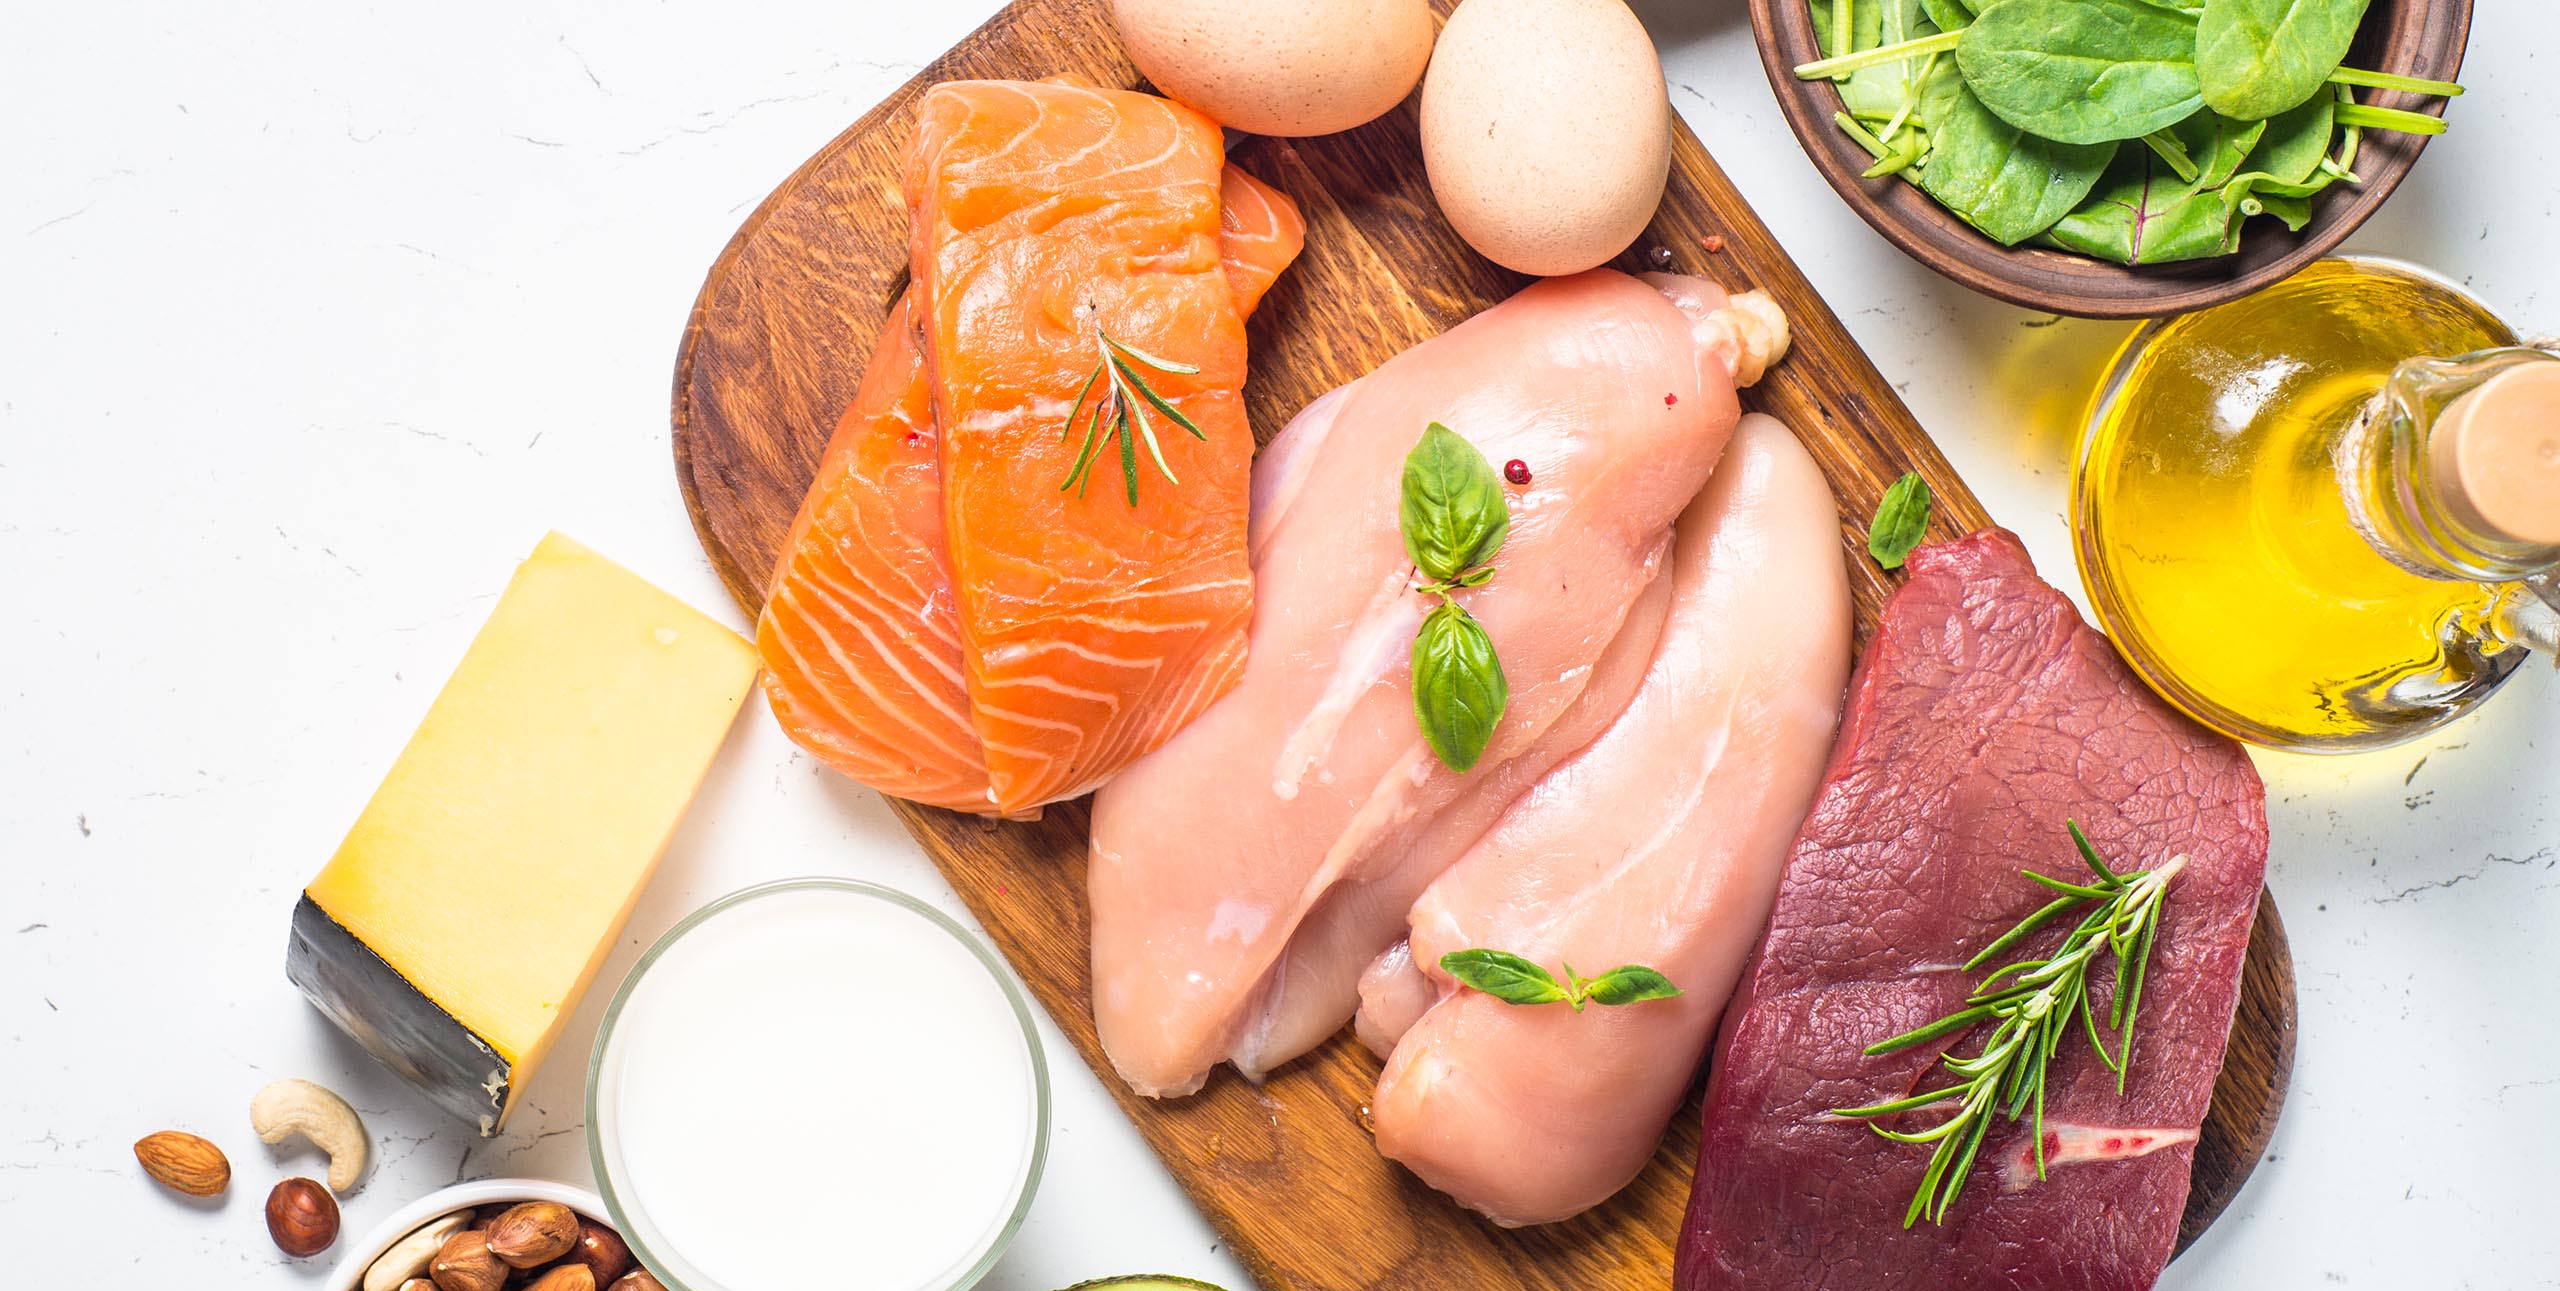 aliments naturellement riches en vitamine B12 : viandes, saumon, oeufs, fromage